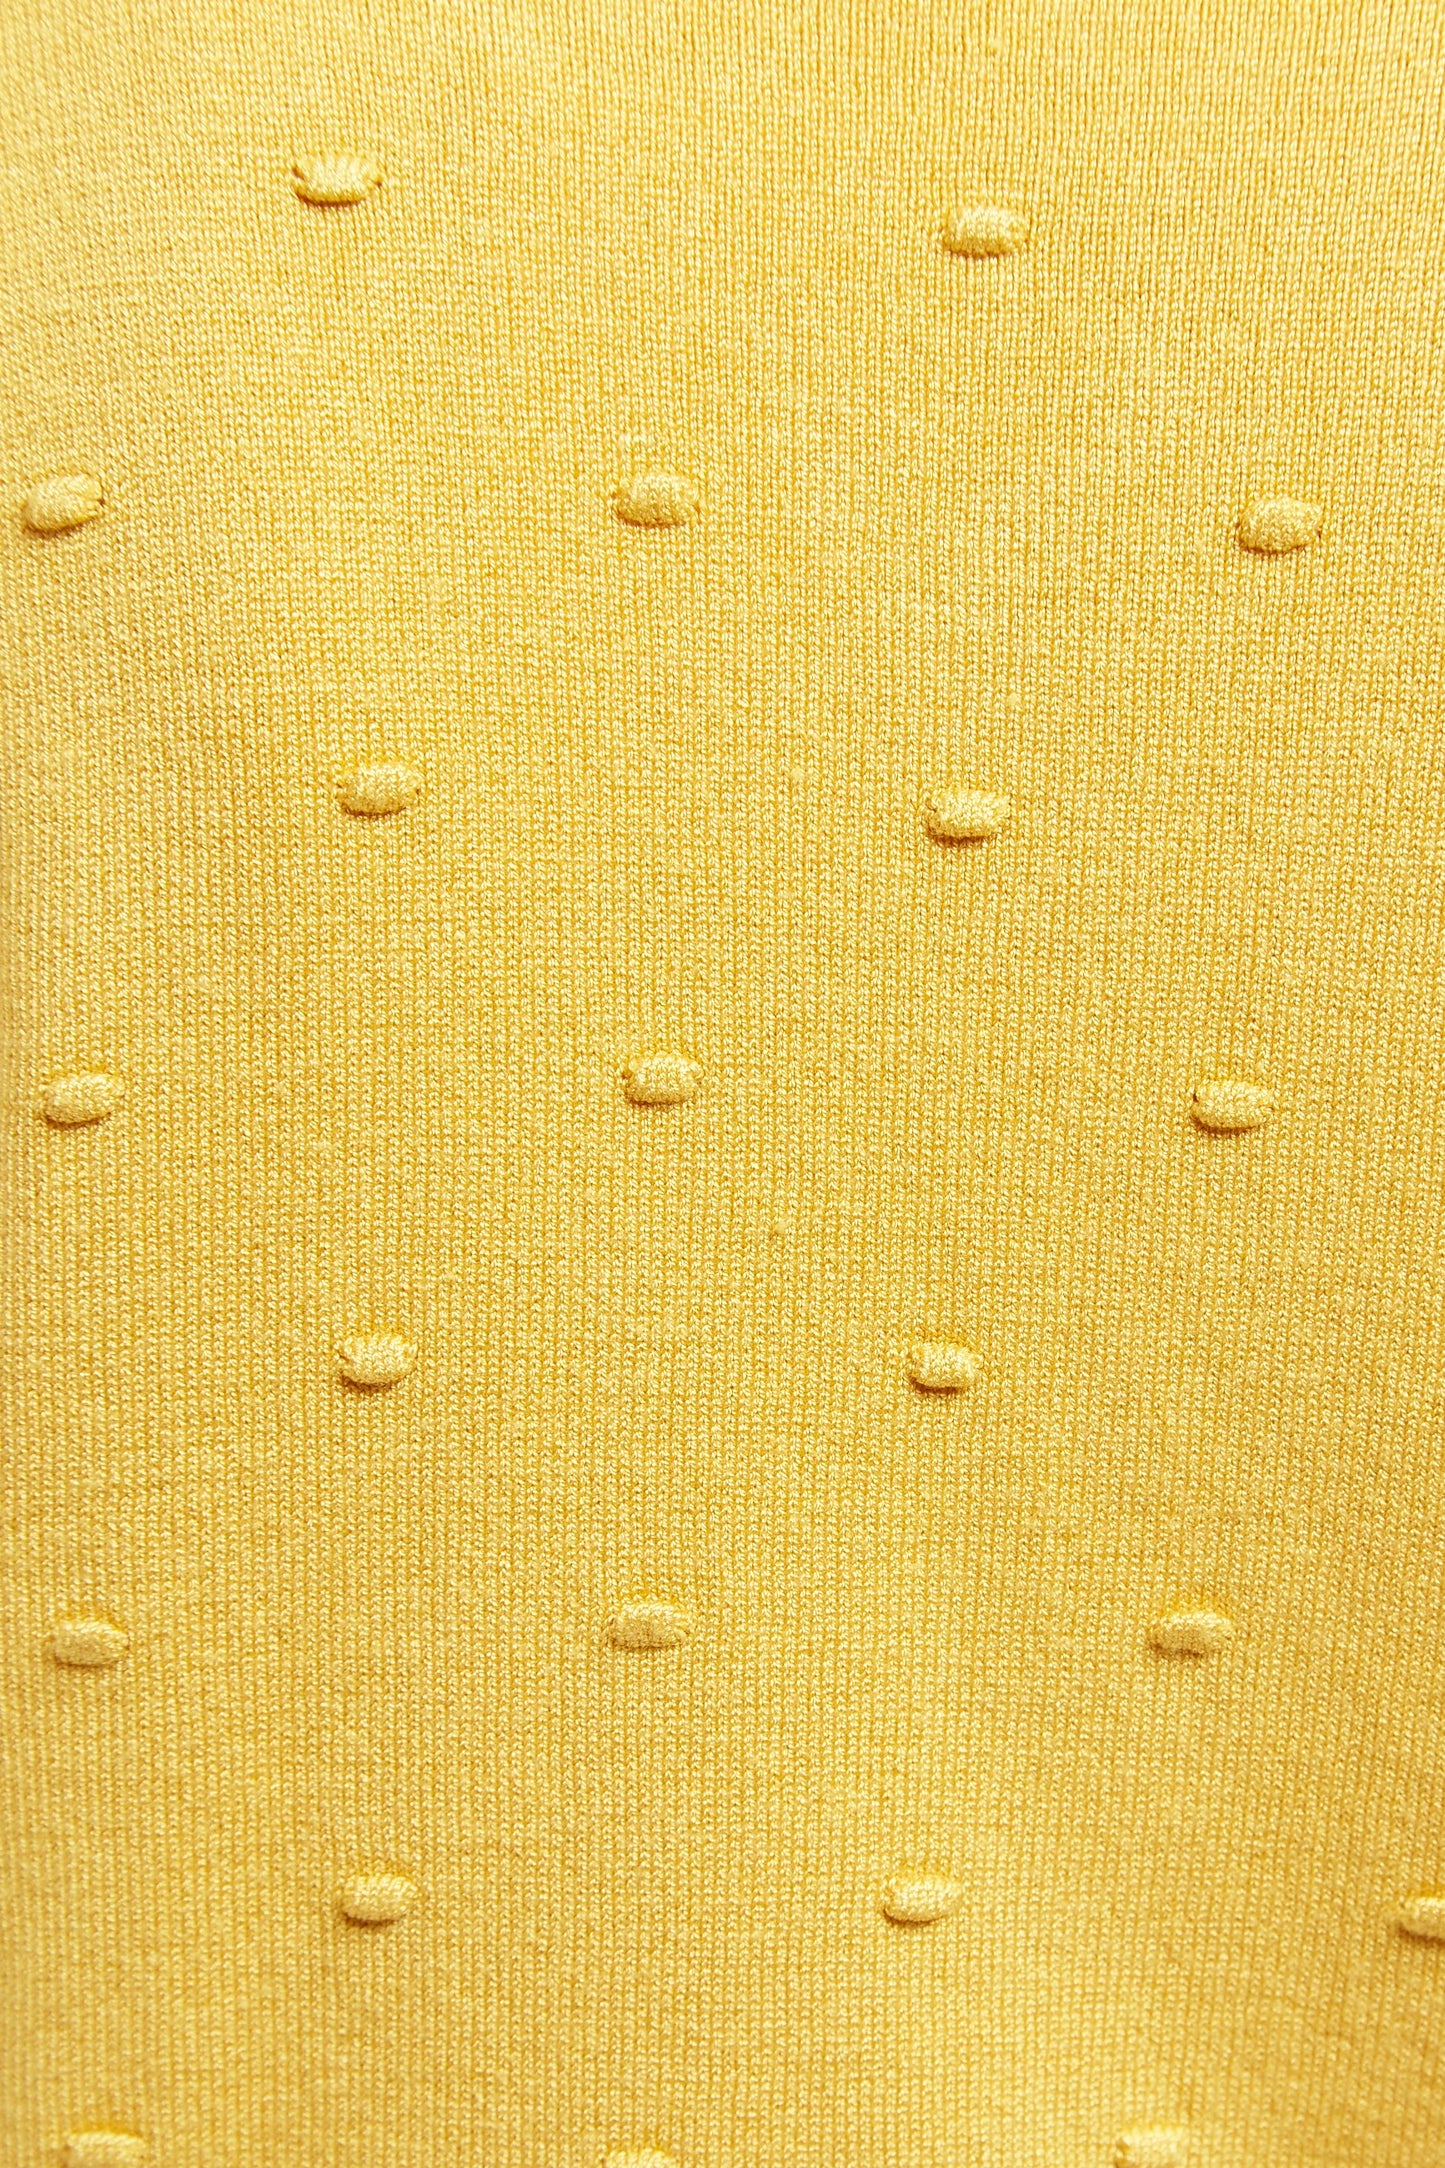 Josephina Raindrops Textured Short Sleeve Collared Sweater Mustard